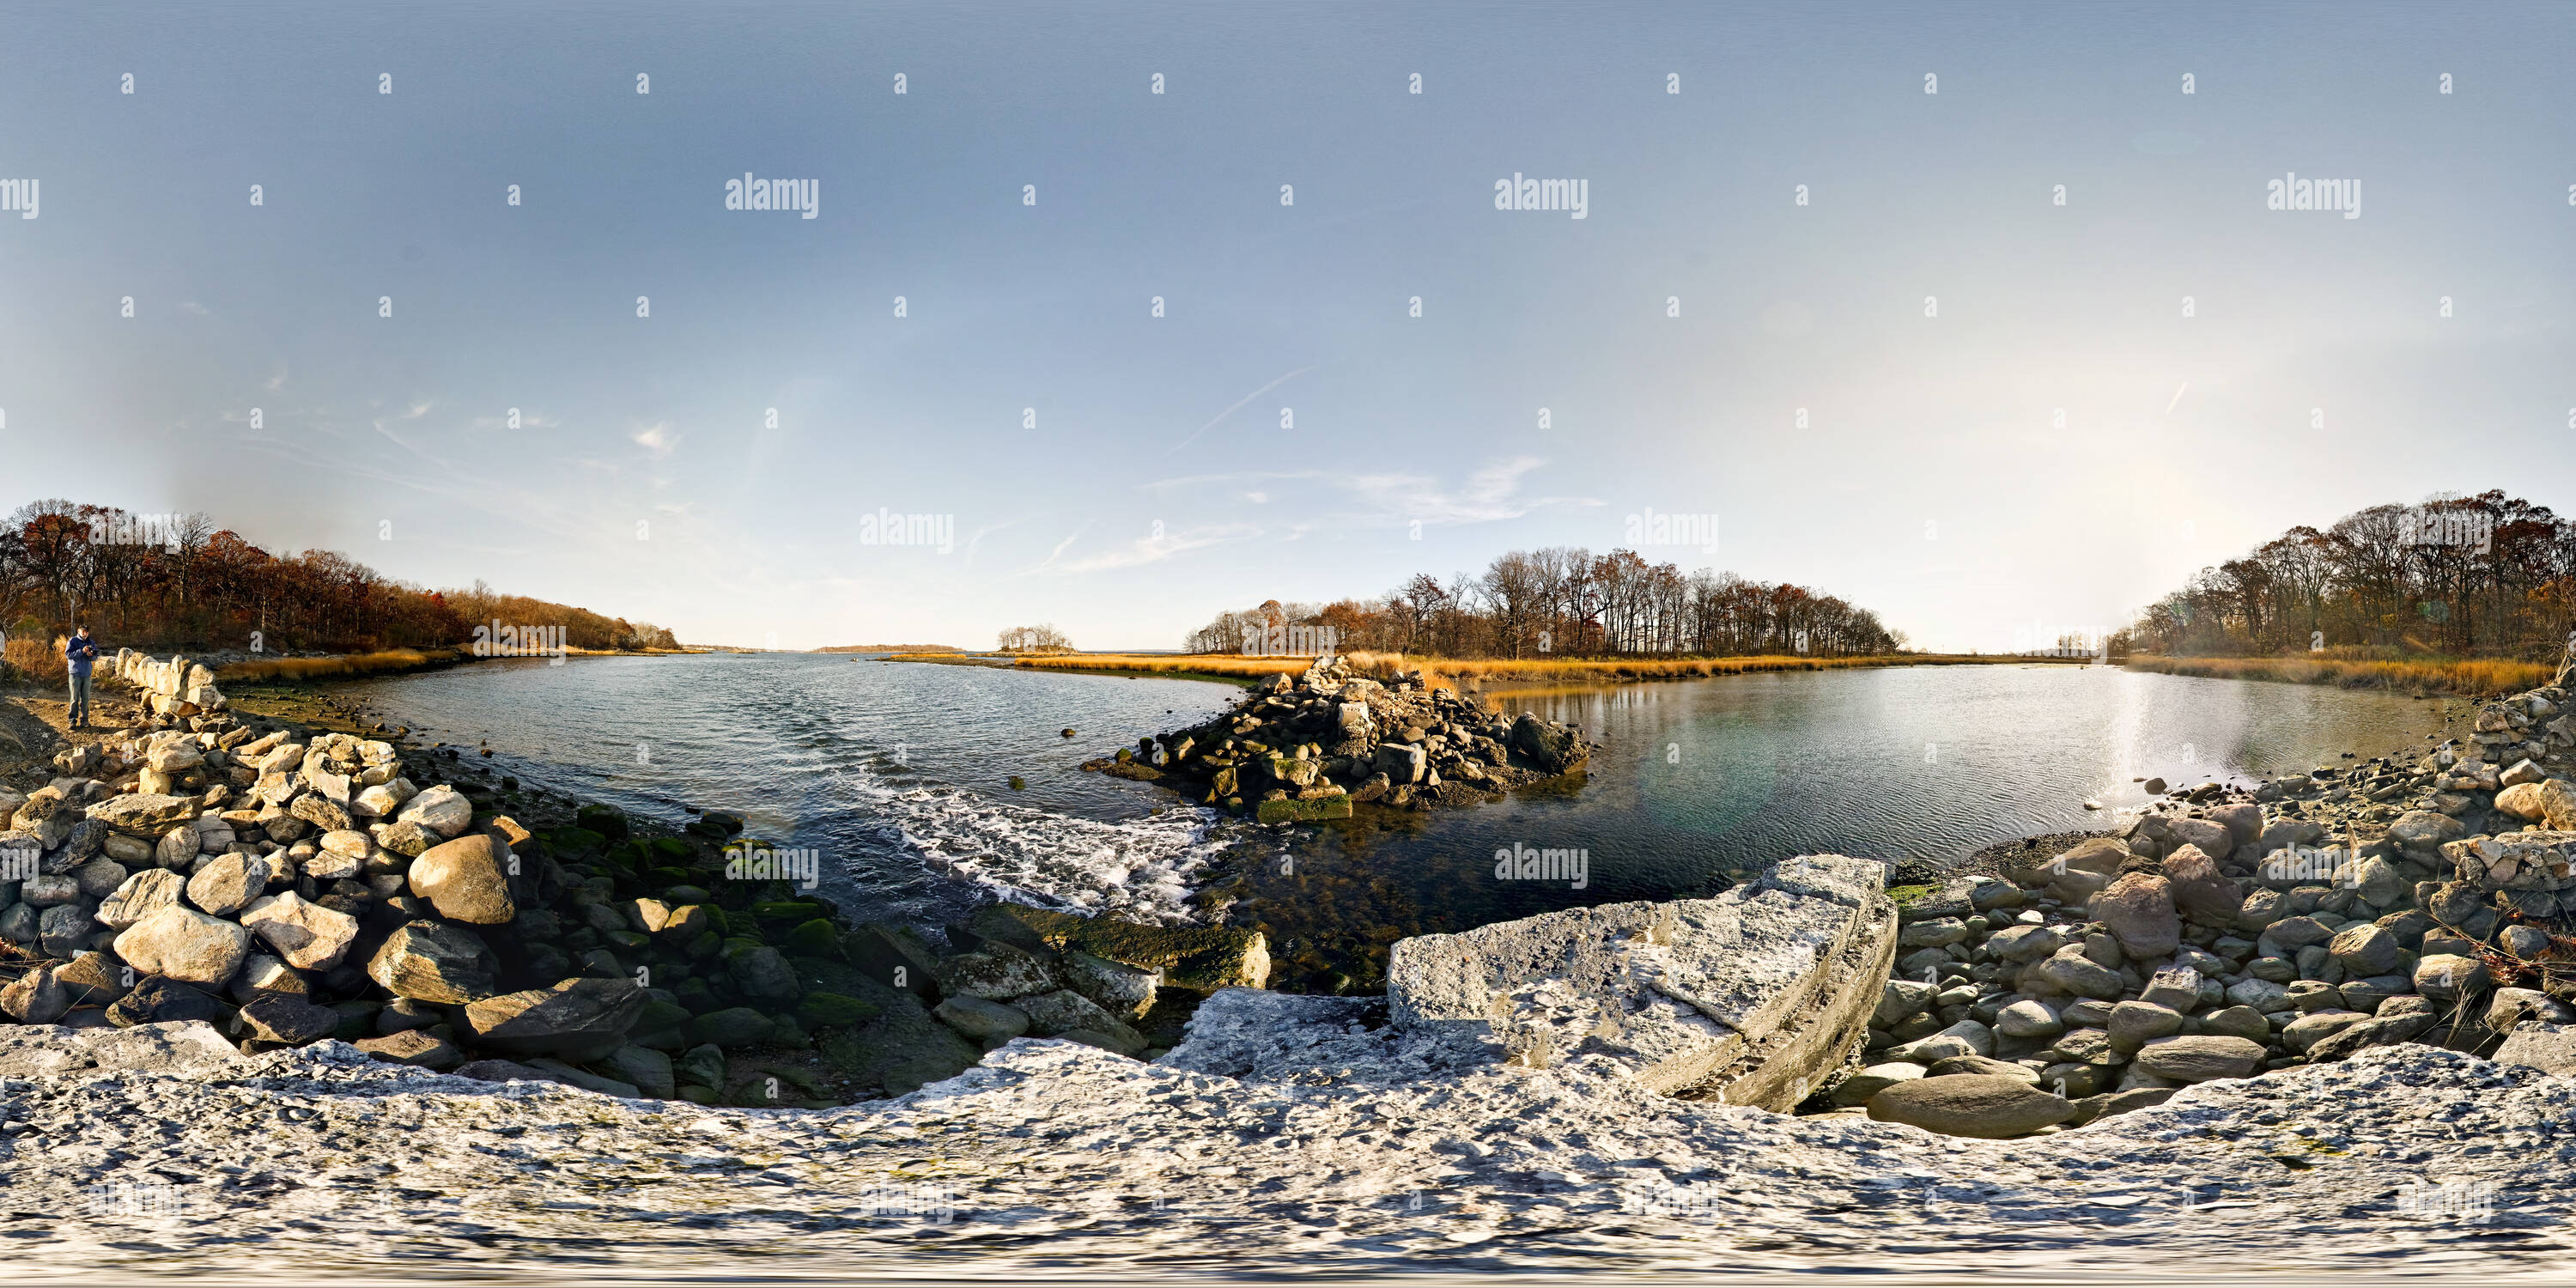 360 Grad Panorama Ansicht von Zwischen Jäger und Twin Island, Pelham Bay Park, New York